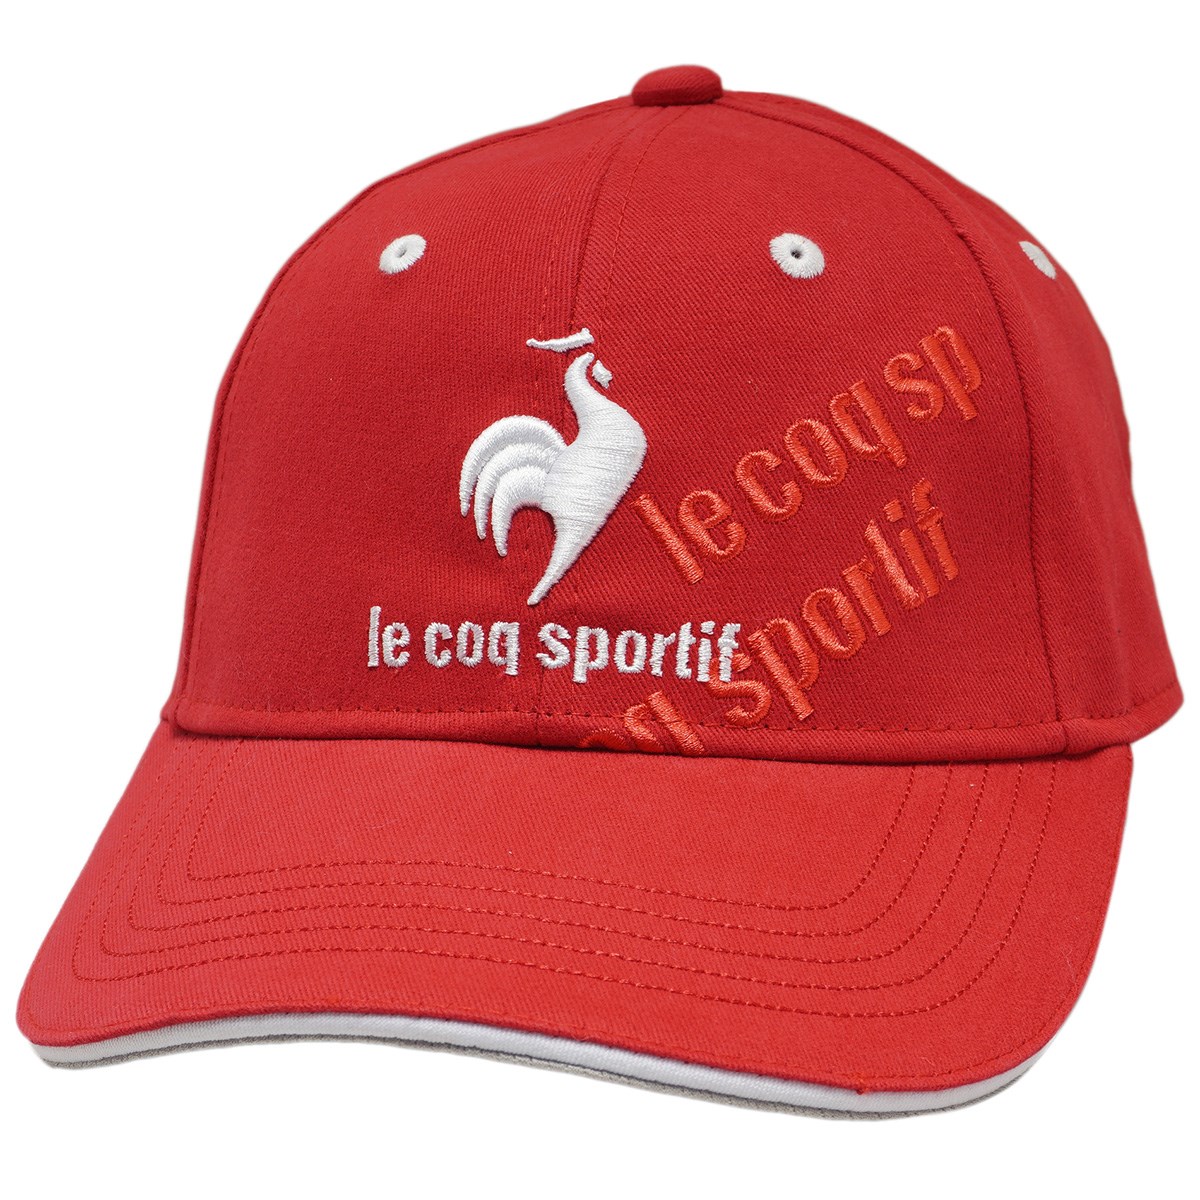 dショッピング |ルコックゴルフ Le coq sportif GOLF ロゴキャップ フリー レッド 00  カテゴリ：帽子・バイザーの販売できる商品 GDOゴルフショップ (0521005293108)|ドコモの通販サイト